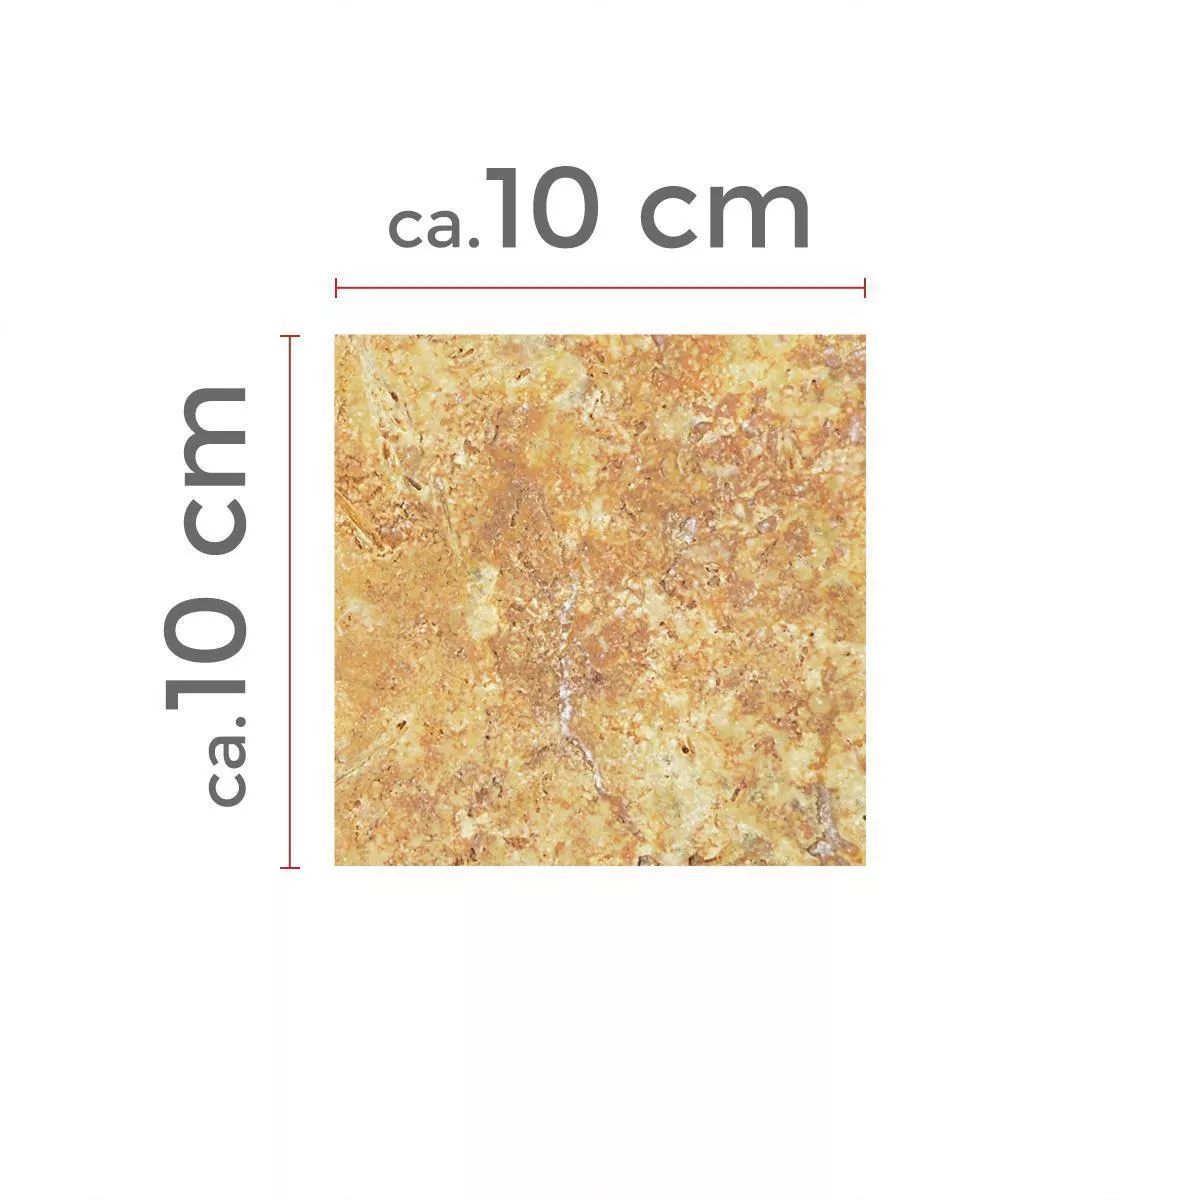 Πρότυπο Πλακάκια Aπό Φυσική Πέτρα Είδος Ασβεστόλιθου Castello Χρυσός 10x10cm